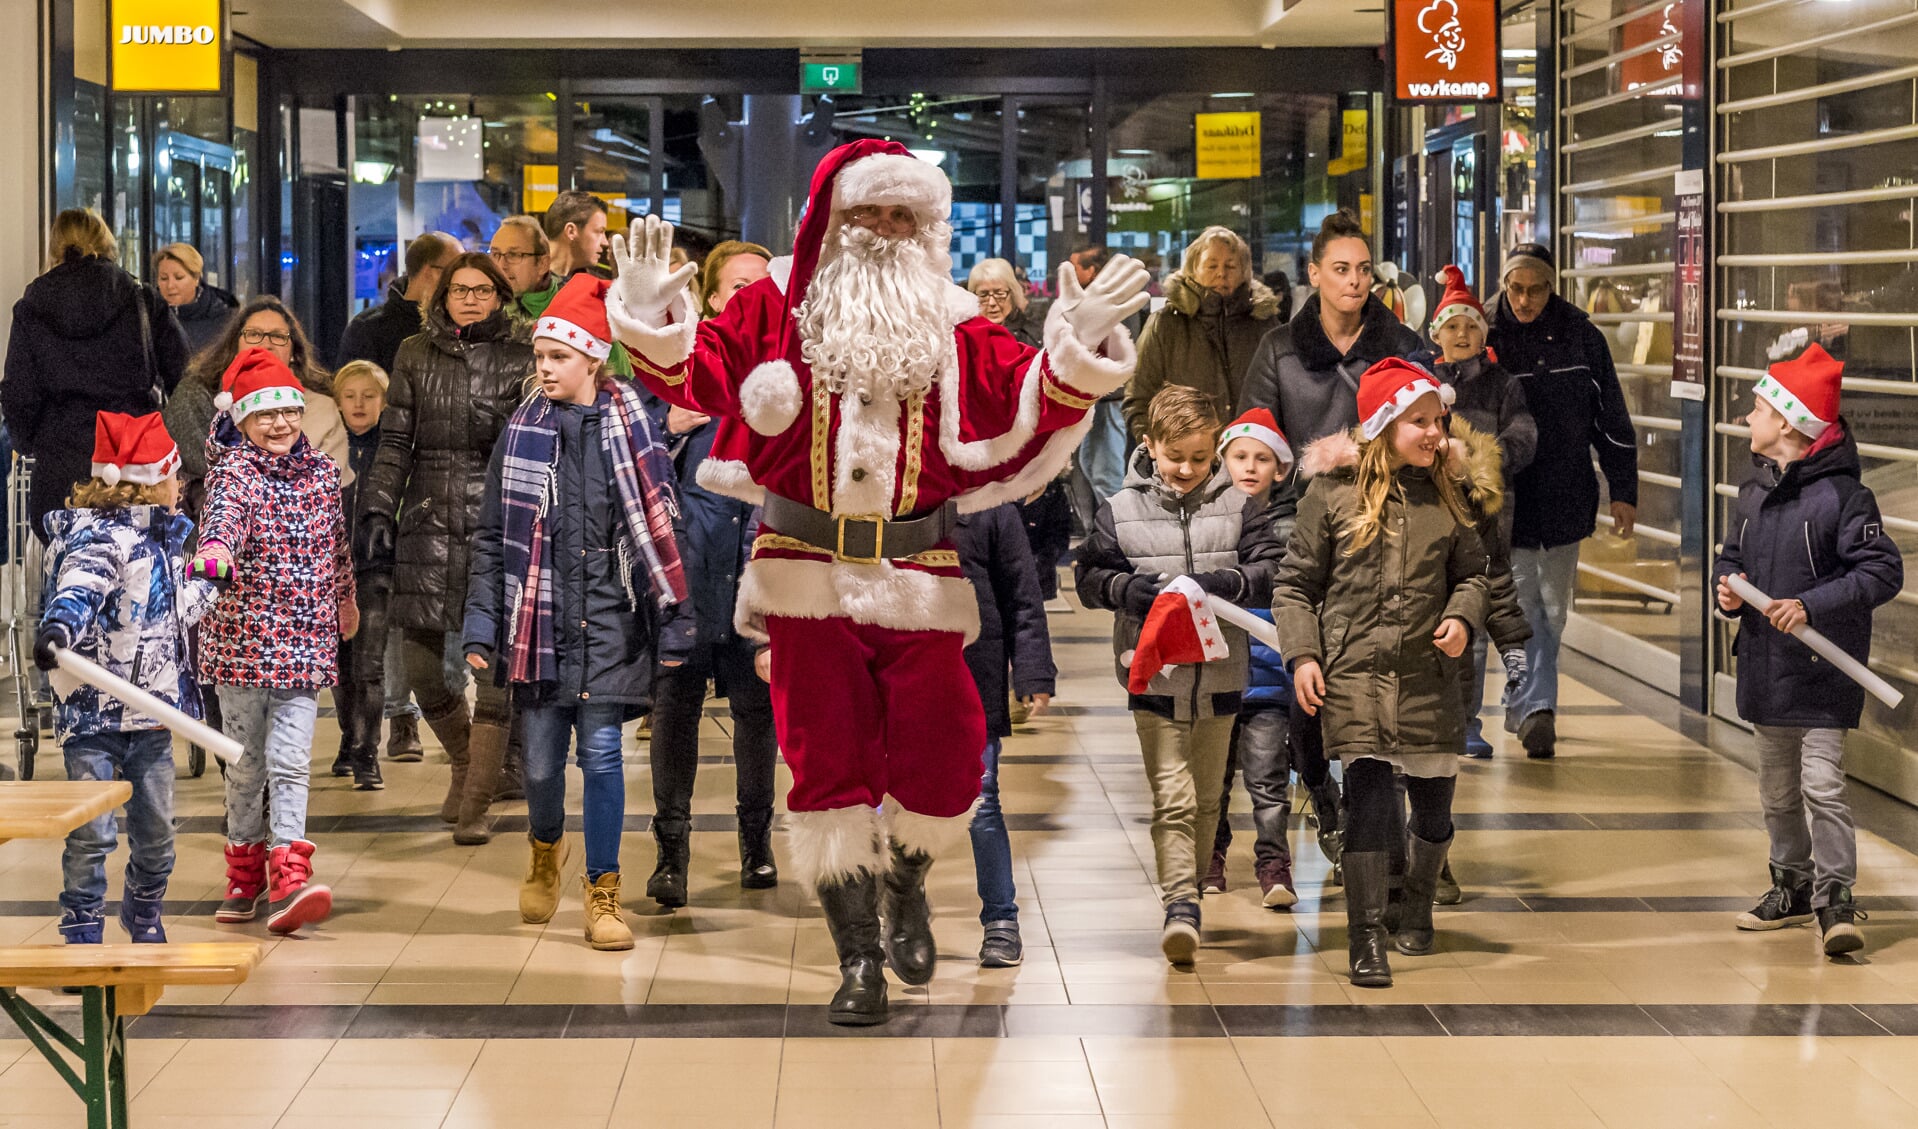 Met de kerstman, Lichtjesparade en kerstmuziek werd Maaswijk in de kerststemming gebracht.